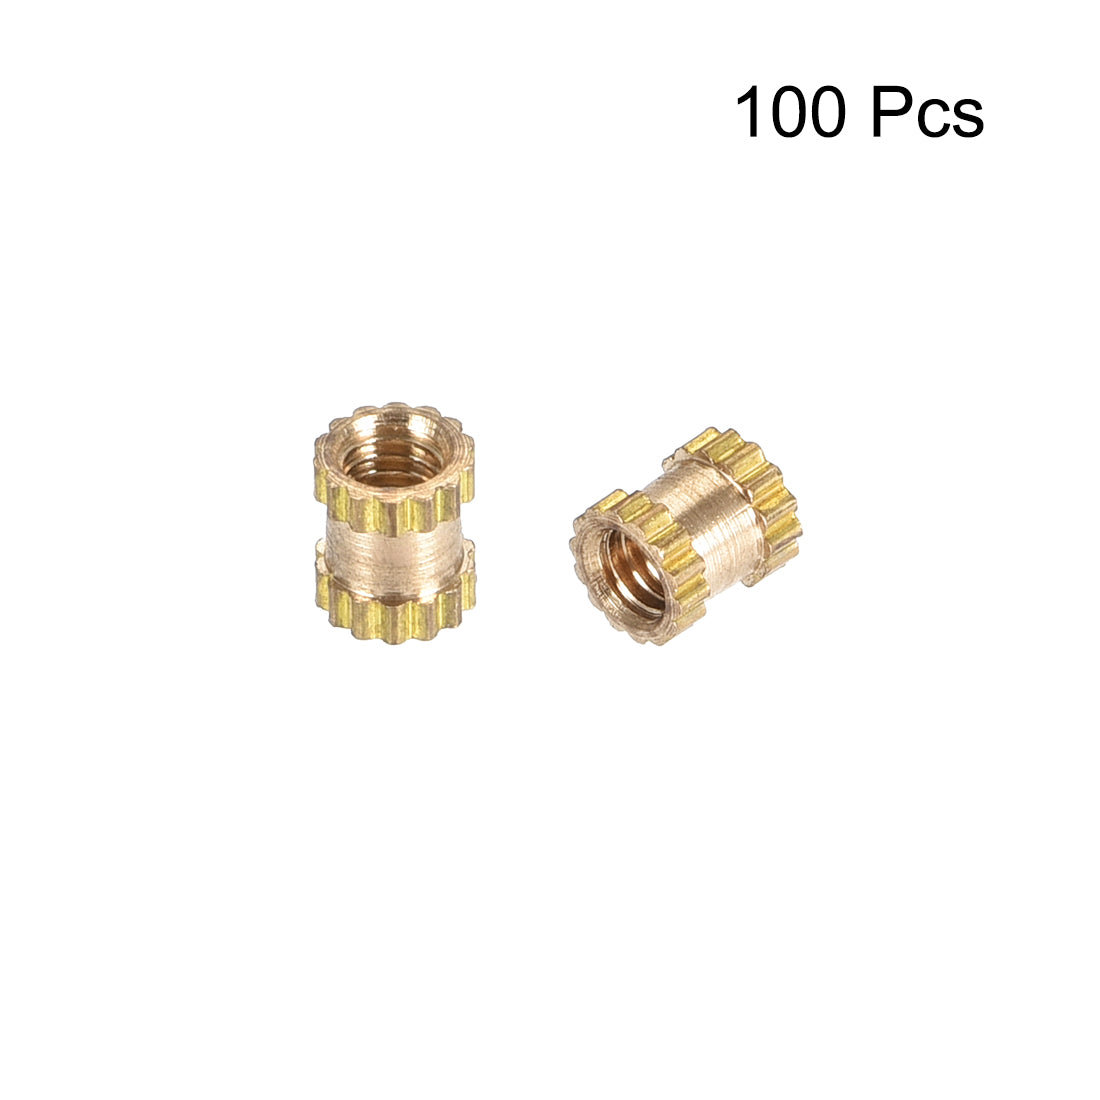 uxcell Uxcell Knurled Insert Nuts, M2.5 x 4mm(L) x 3.5mm(OD) Female Thread Brass Embedment Assortment Kit, 100 Pcs